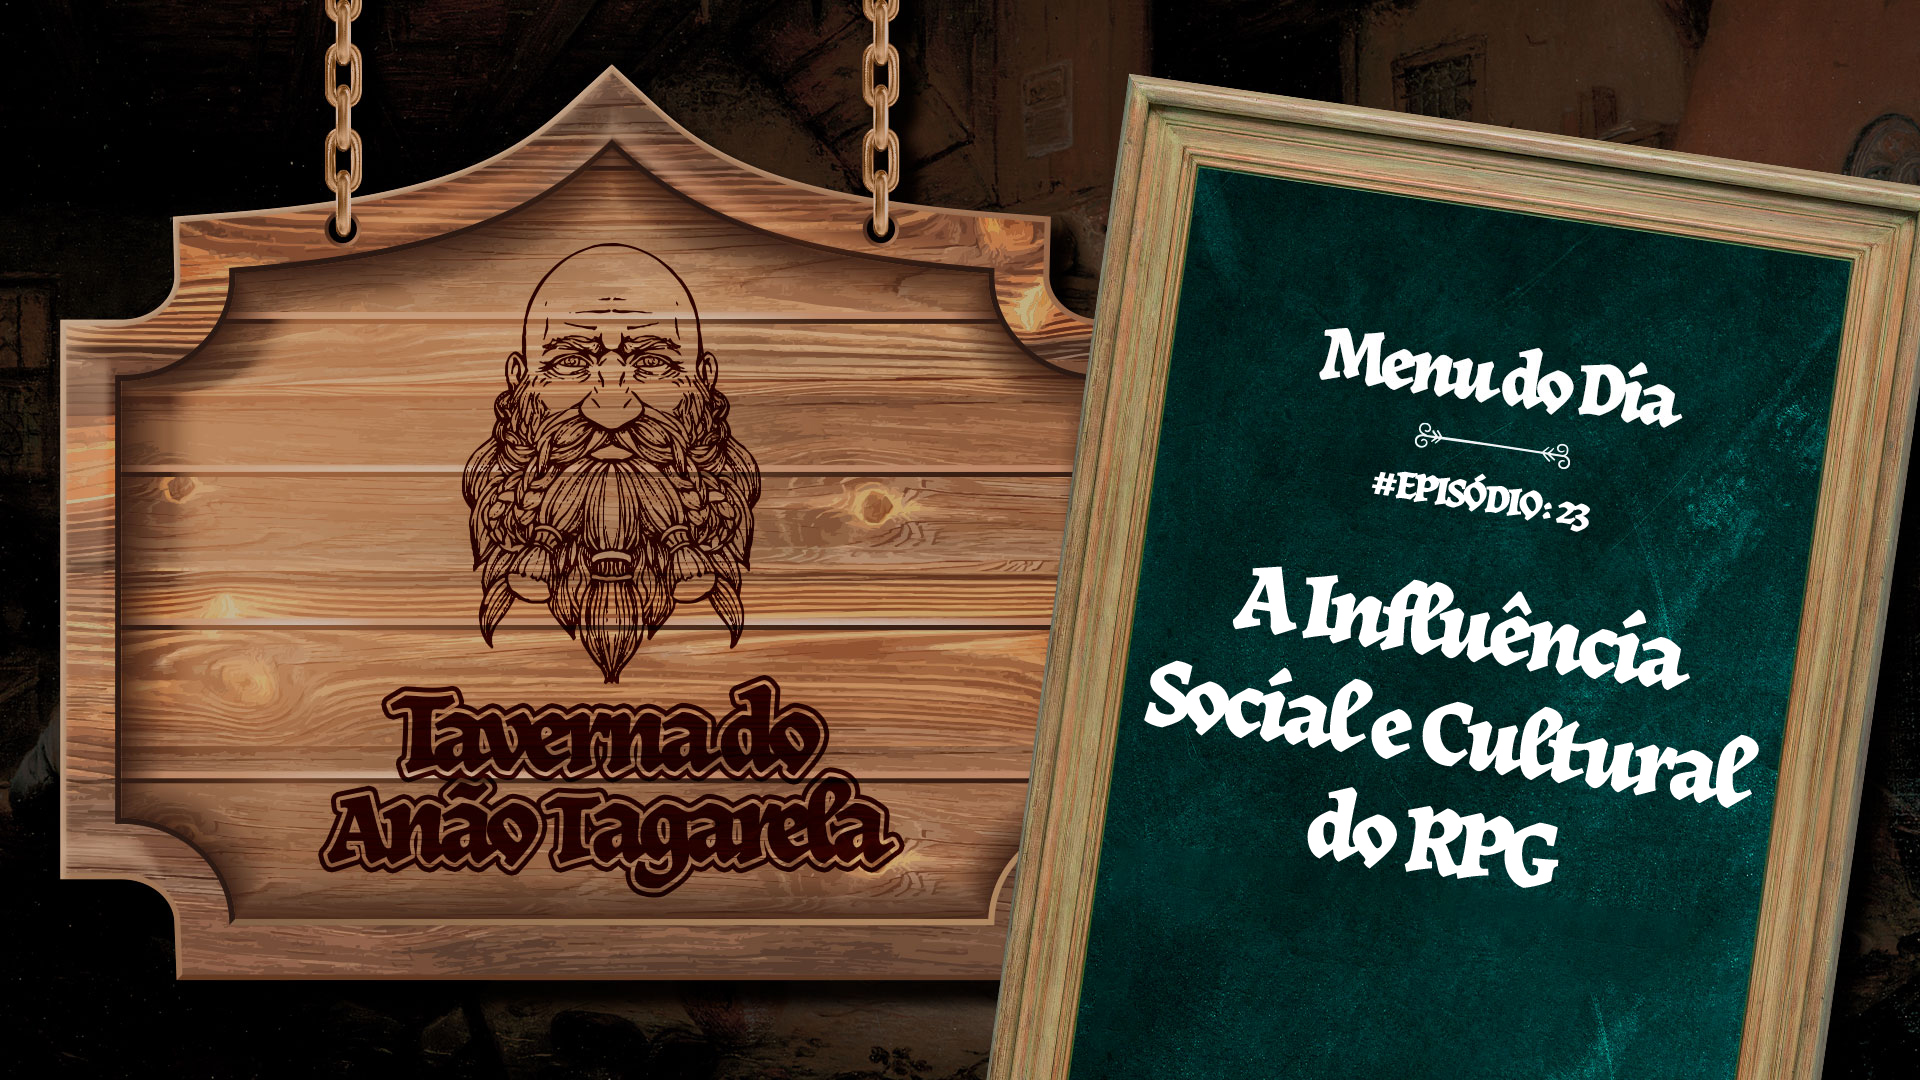 A Influência Social e Cultural do RPG – Taverna do Anão Tagarela #23